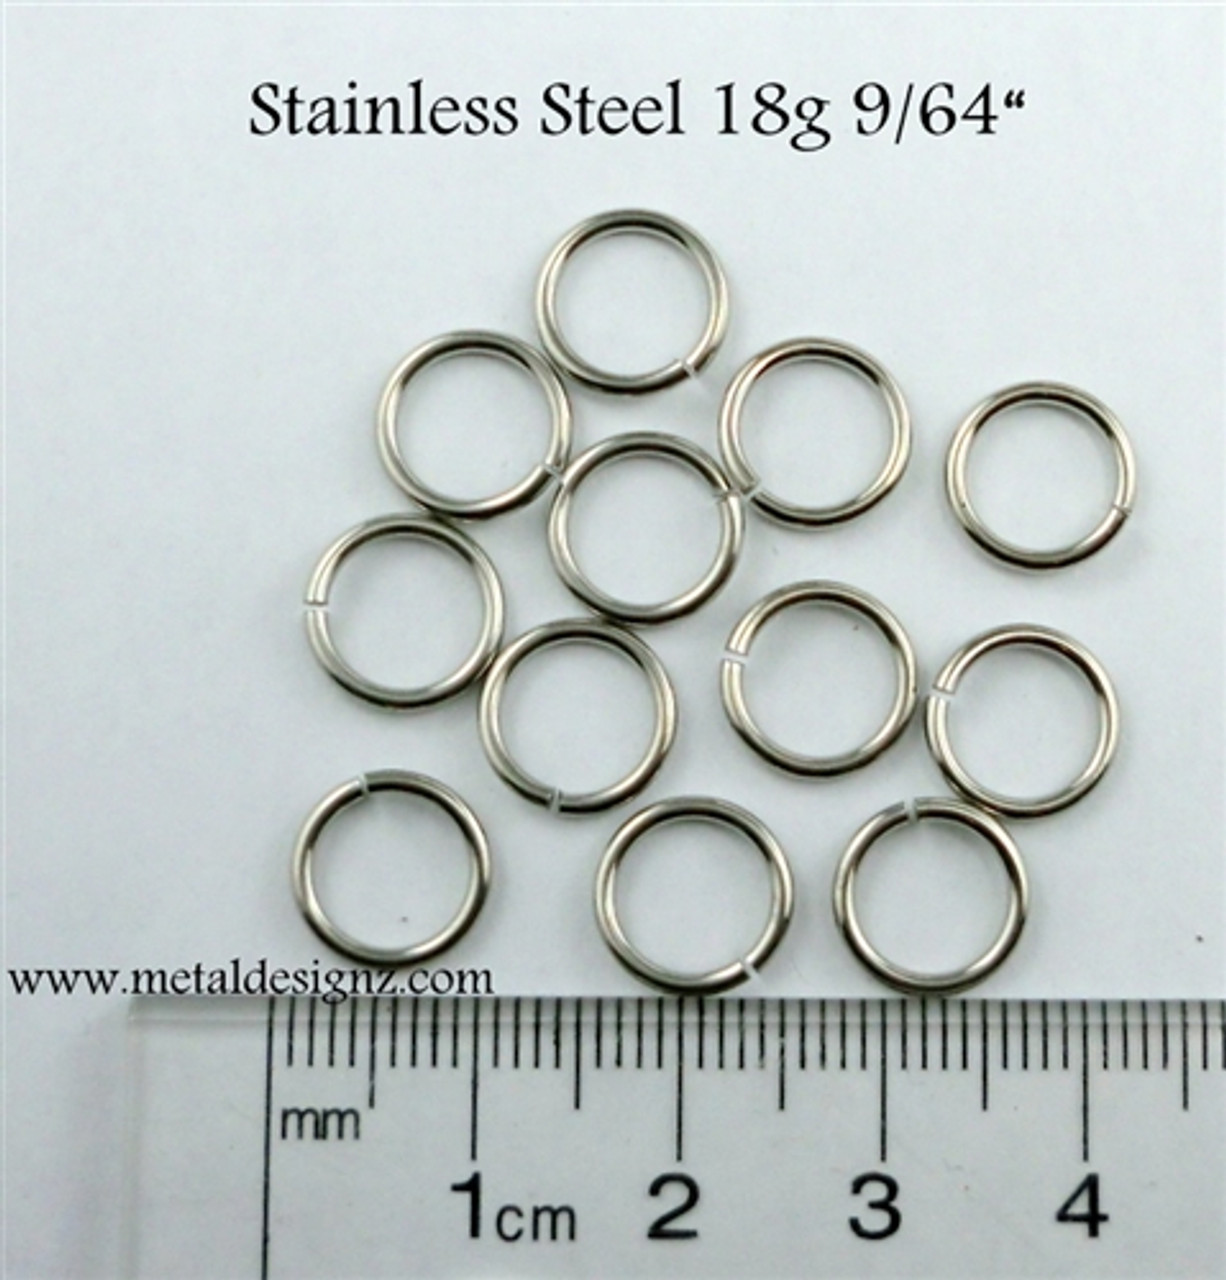 Stainless Steel Jump Rings 